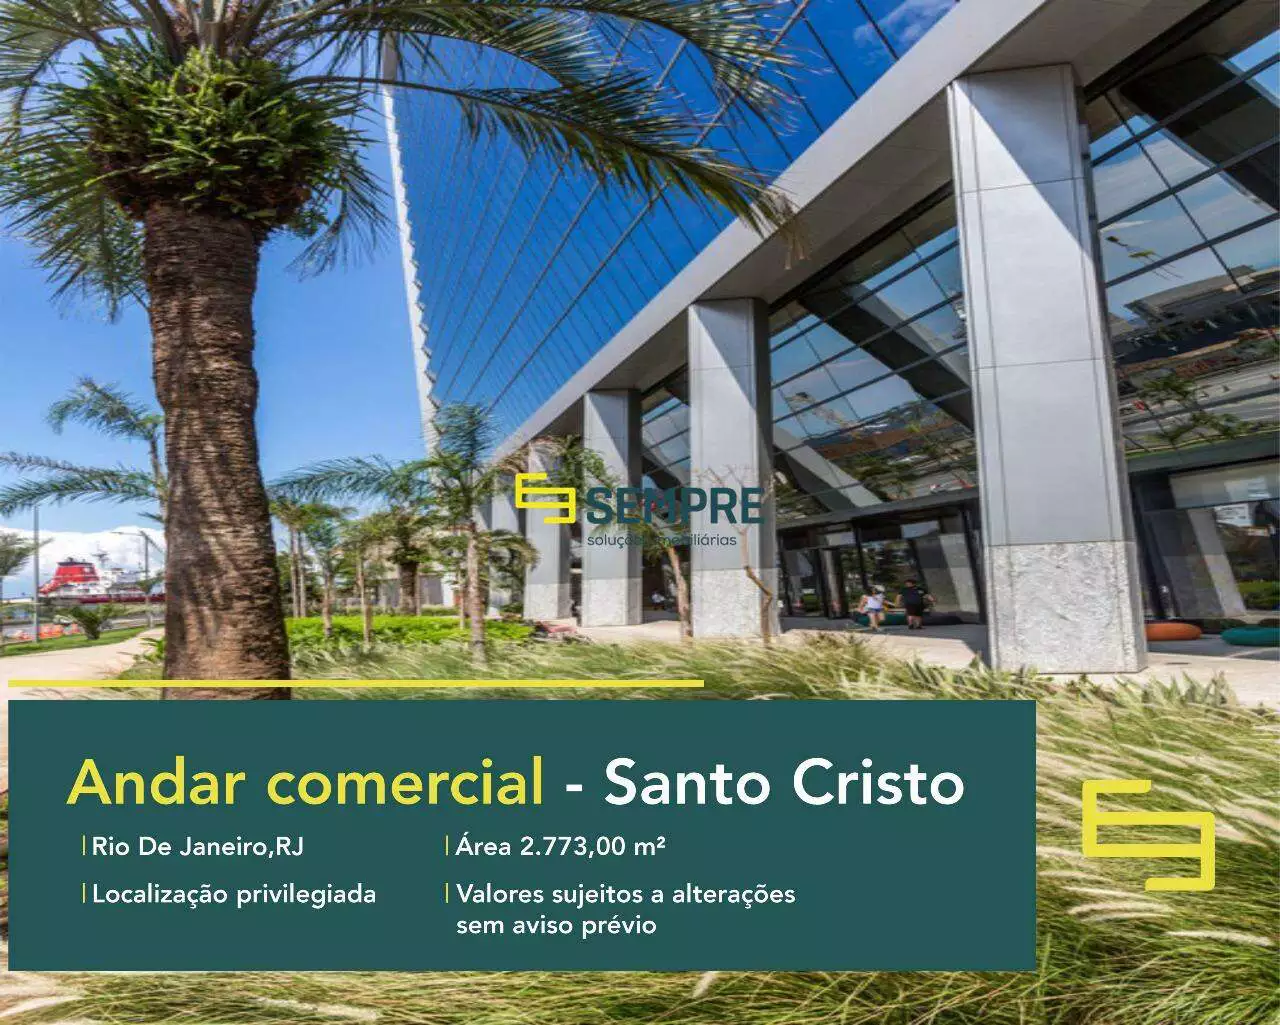 Laje corporativa no AQWA Corporate para locação - Rio de Janeiro. O estabelecimento comercial conta com área de 2.773,00 m².